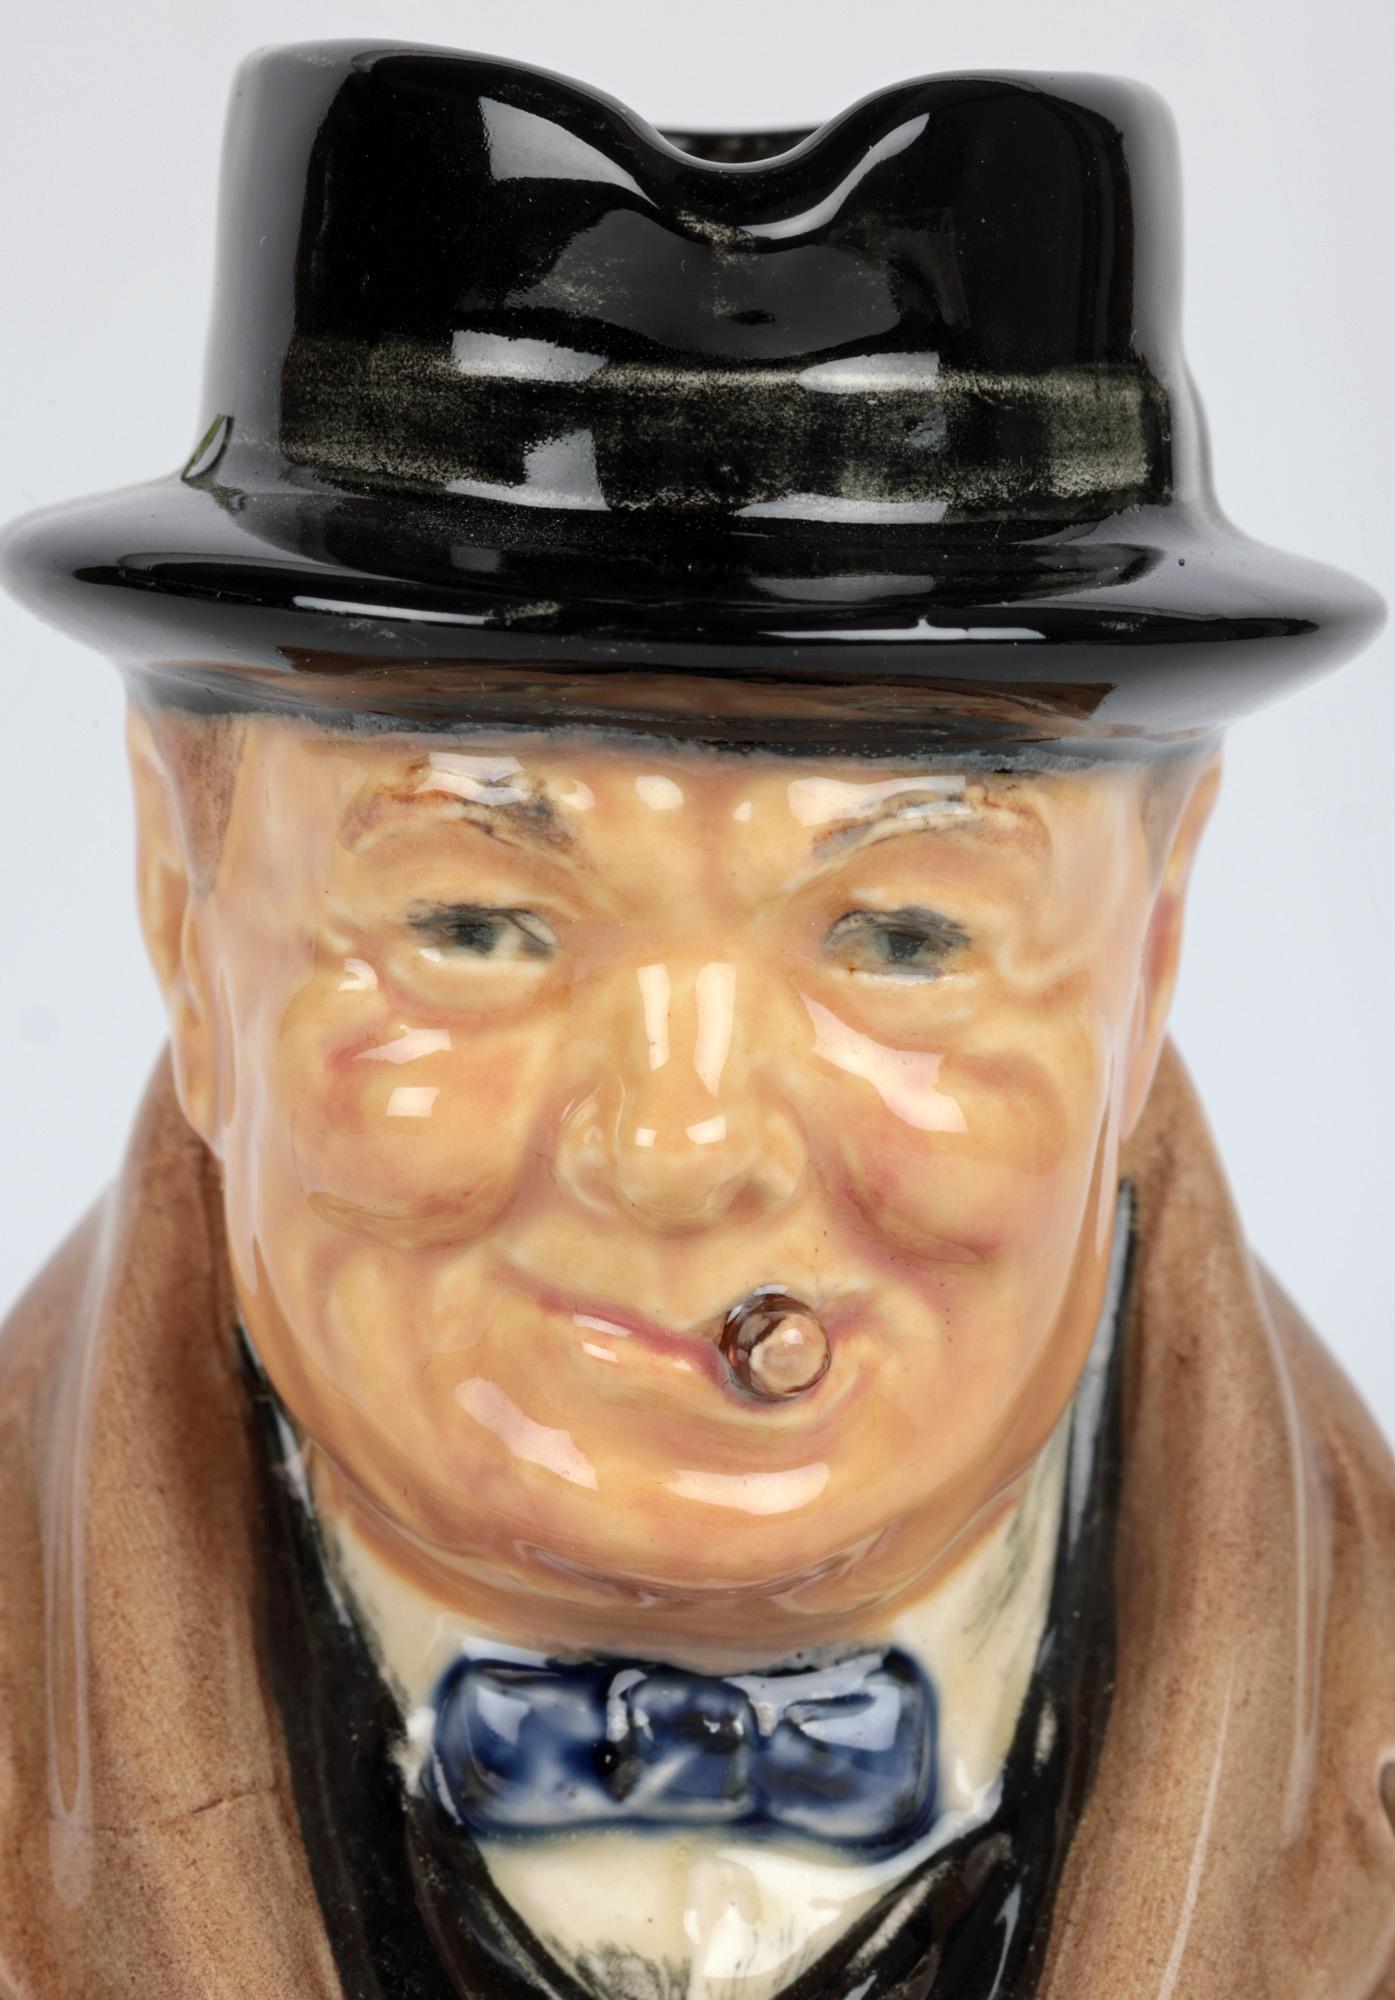 Une élégante et rare cruche de Winston Churchill de Royal Doulton, qui aurait été fabriquée pour commémorer son accession au poste de Premier ministre le 10 mai 1940 et datée en conséquence. La cruche en céramique de petite taille le représente